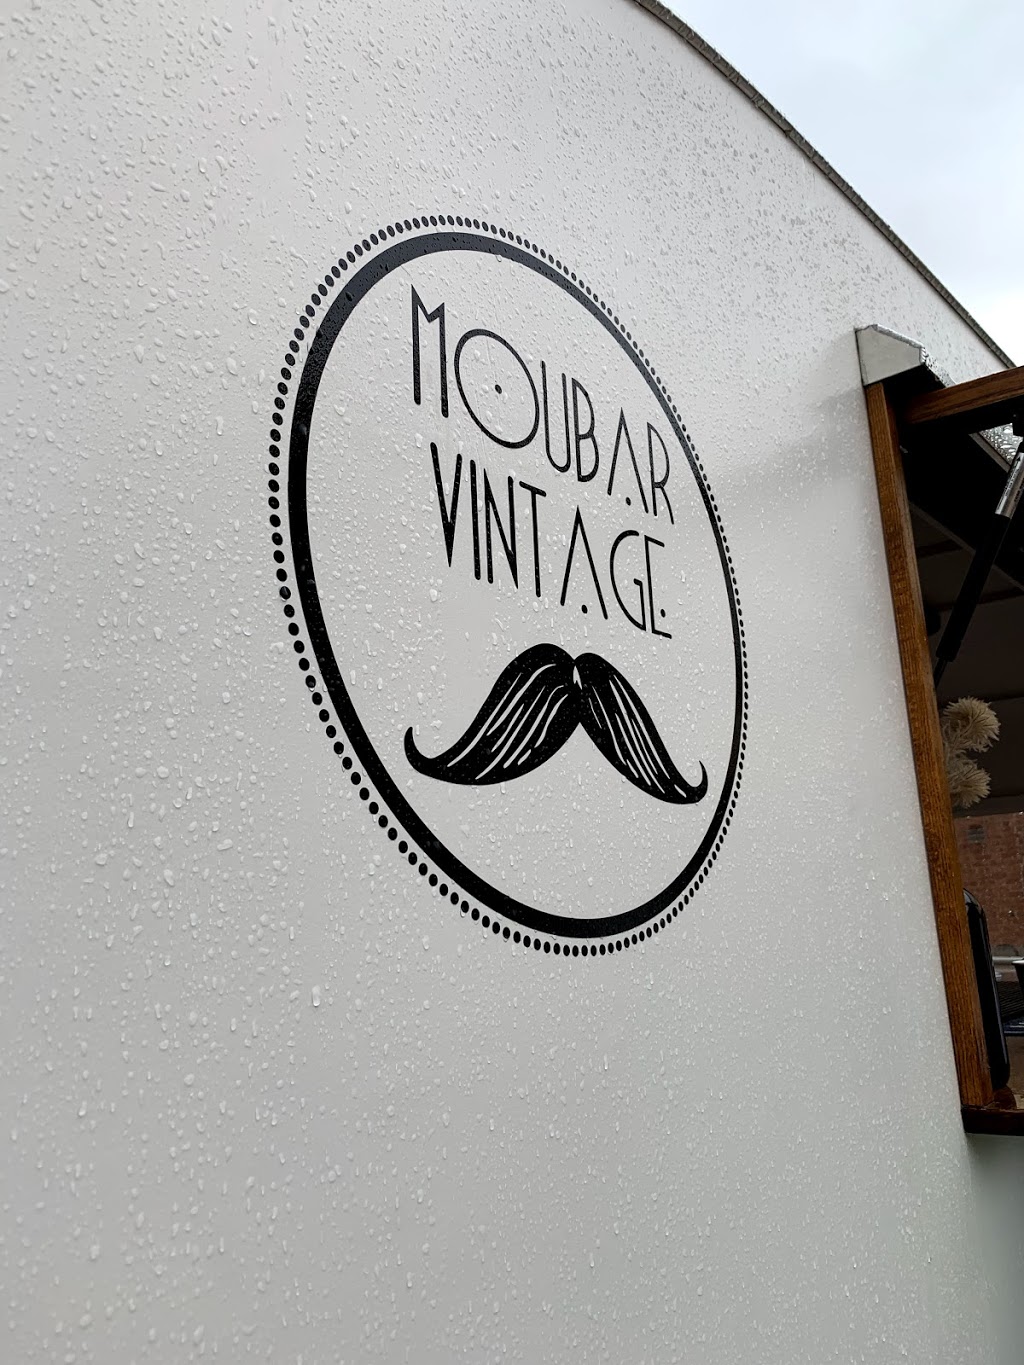 Moubar Vintage | cafe | Ribbon Gang Ln, Bathurst NSW 2795, Australia